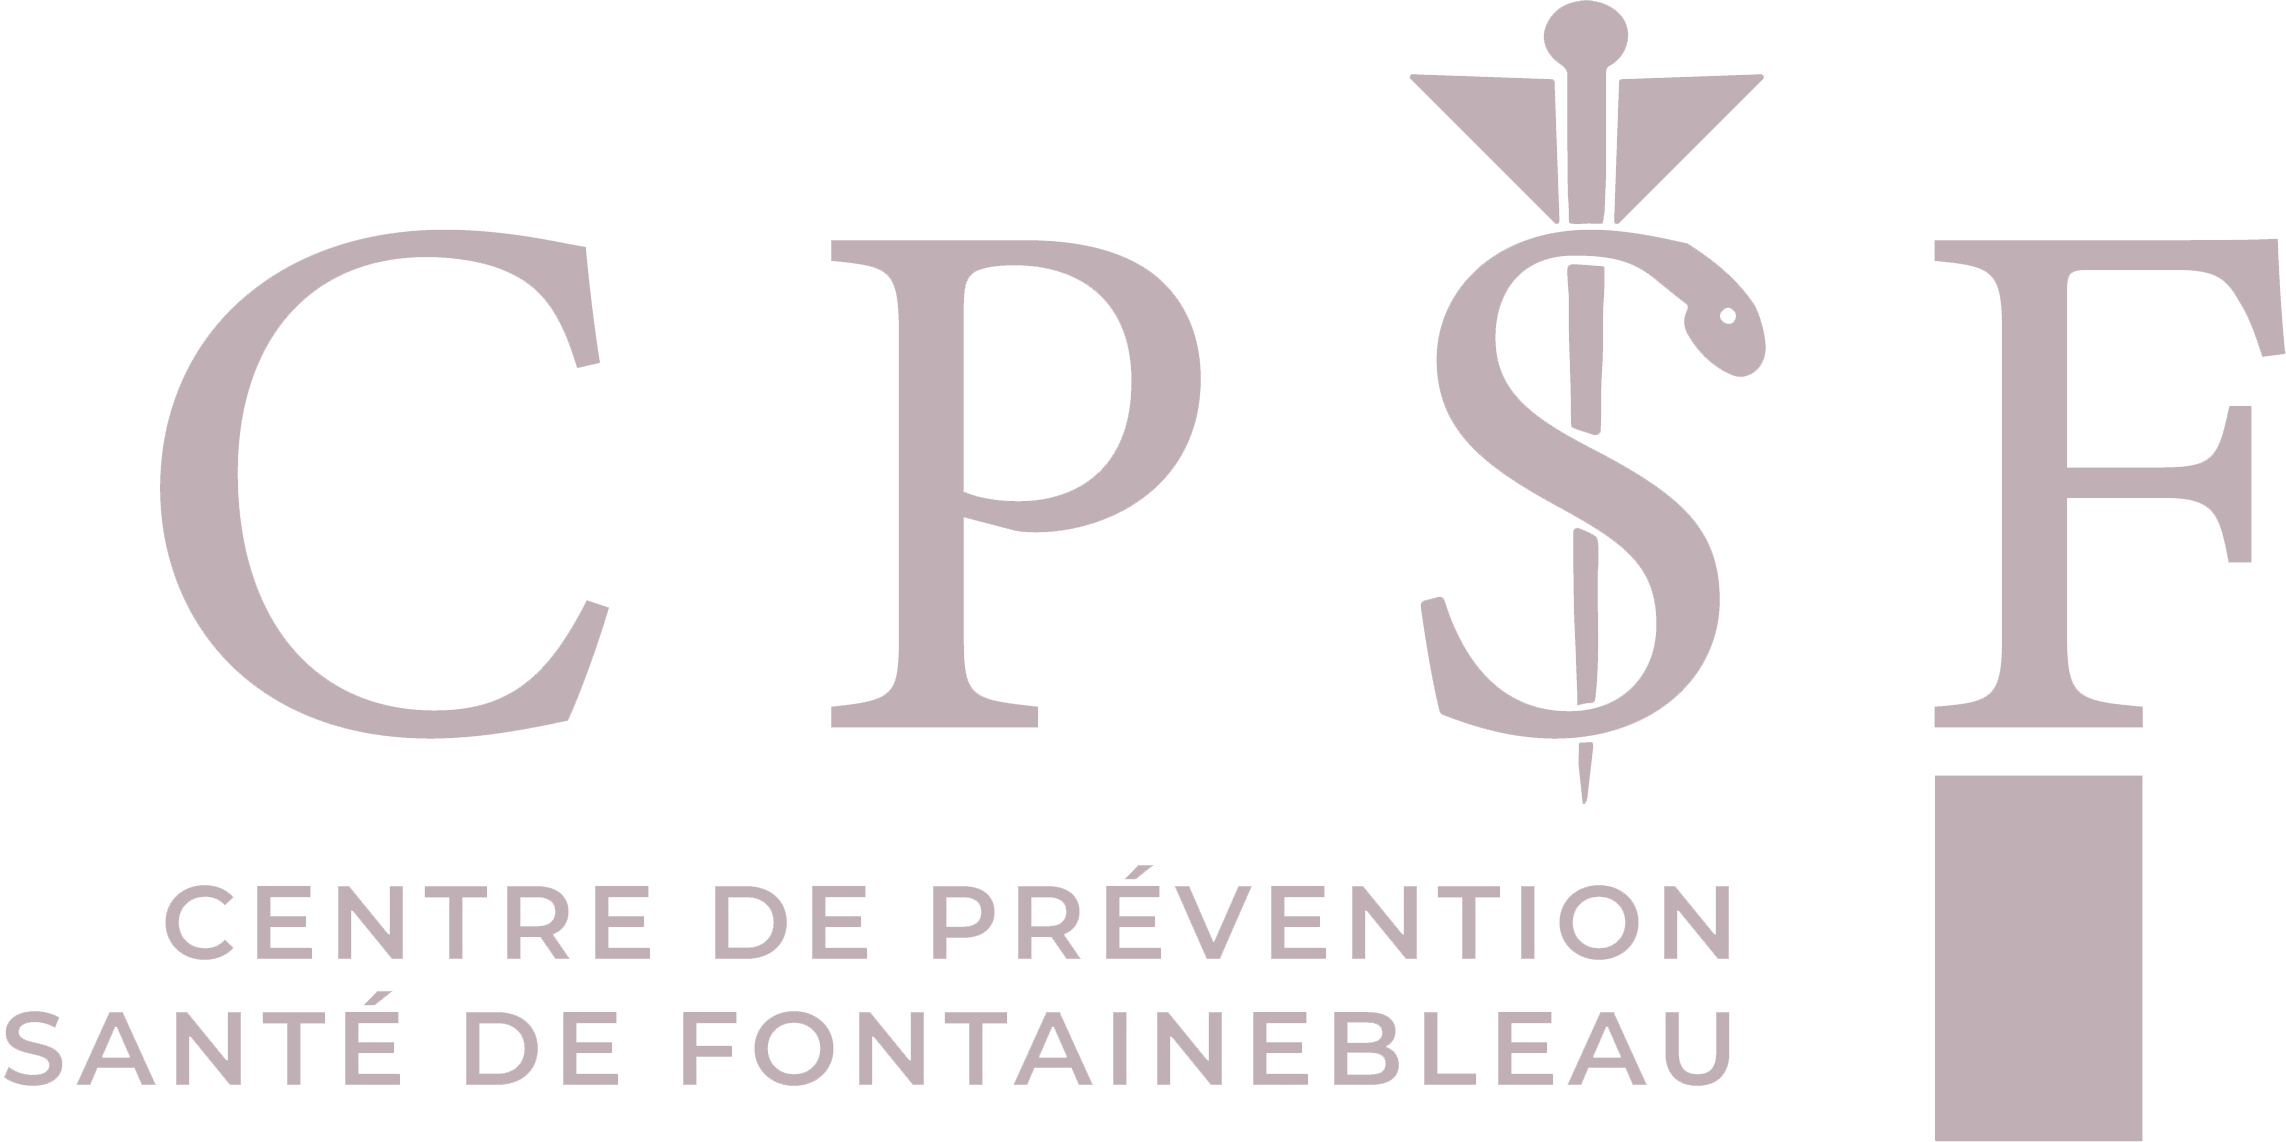 Centre de Prévention Santé de Fontainebleau